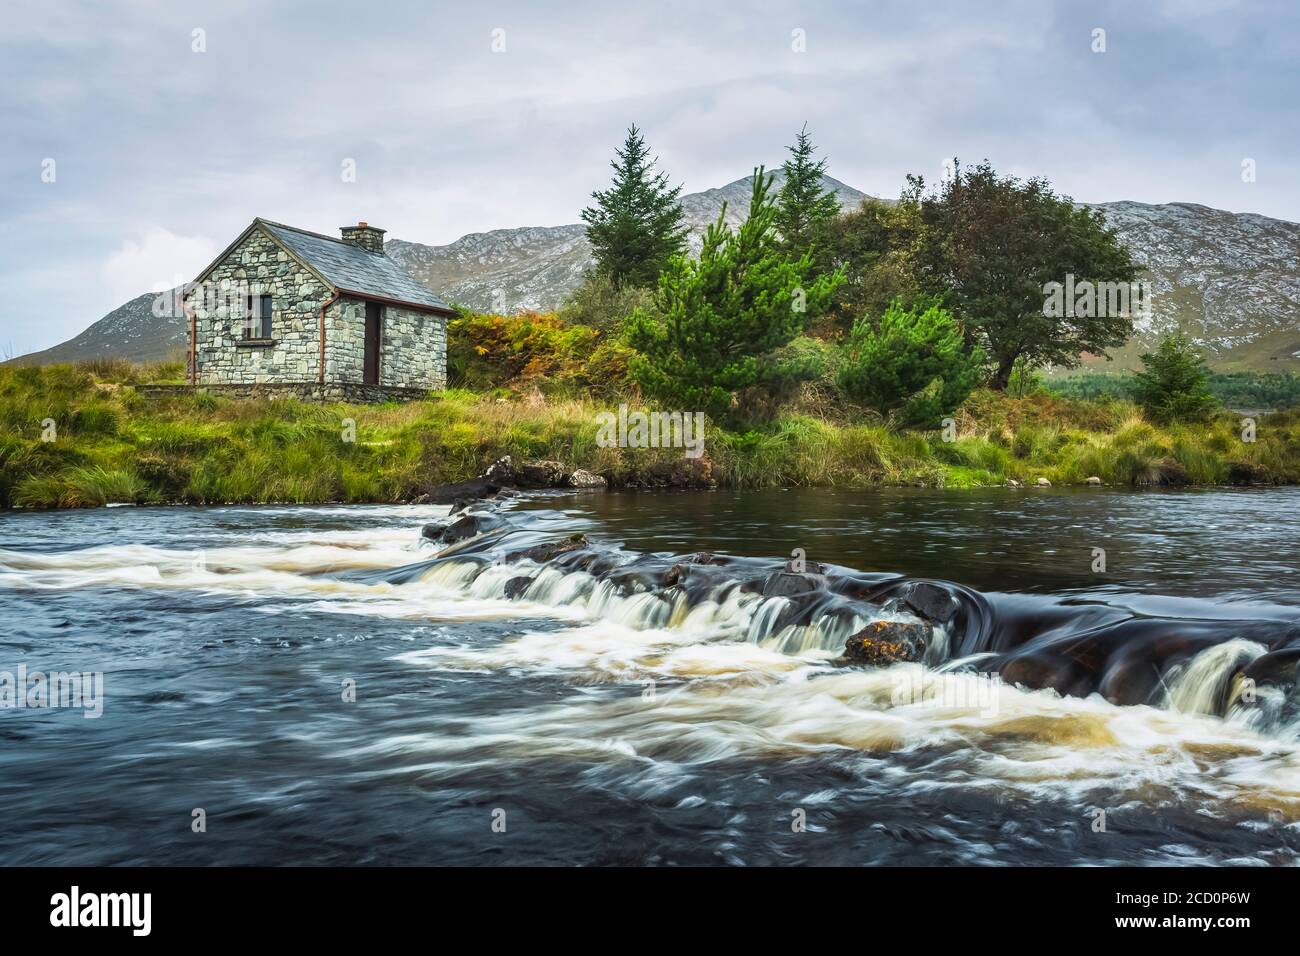 Petite cabane de pêcheur en pierre sur les rives d'une petite rivière avec des montagnes en arrière-plan par une journée nuageux; Connemara, comté de Galway, Irlande Banque D'Images